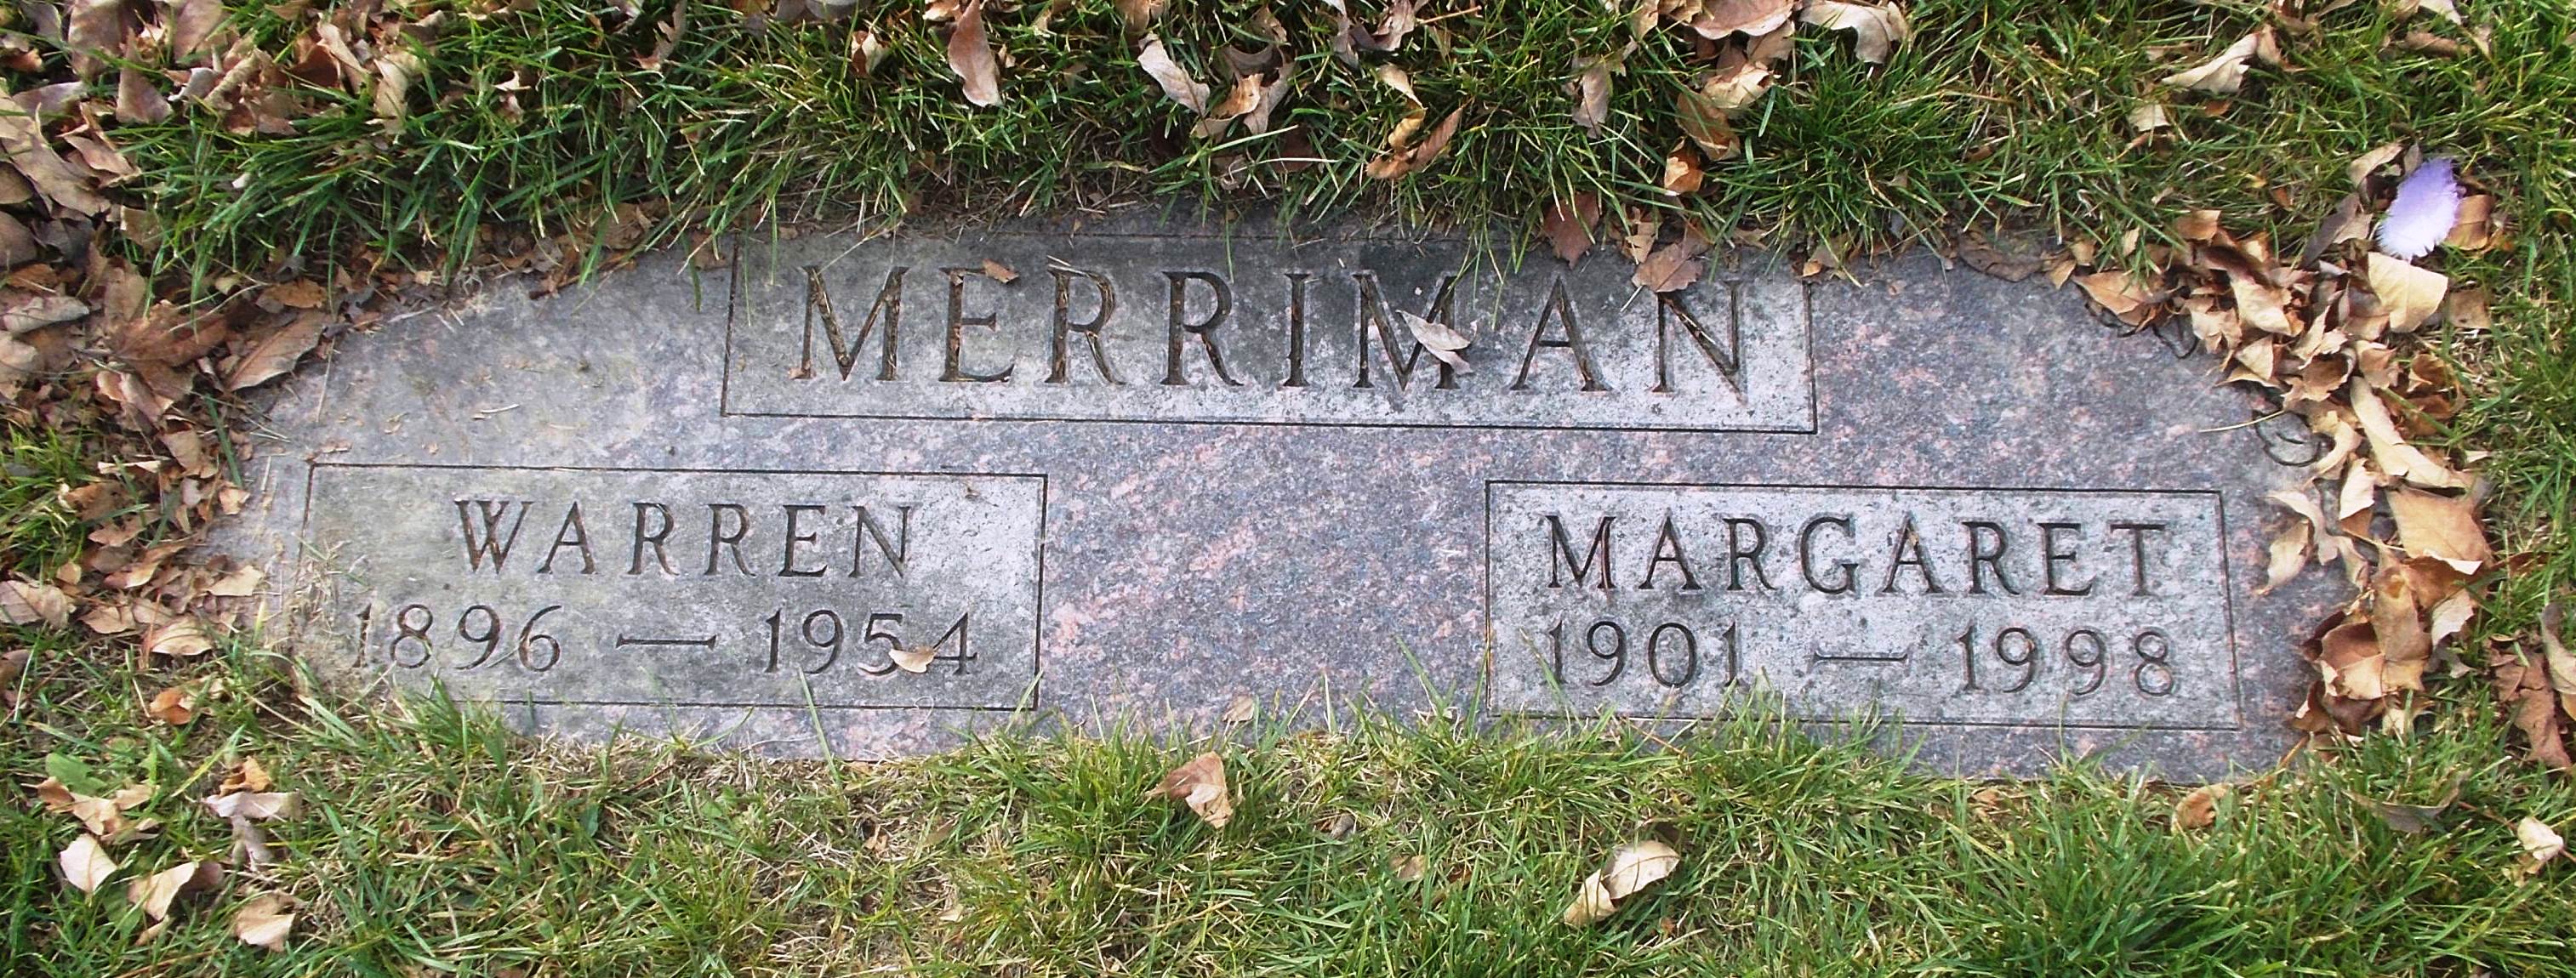 Warren Merriman